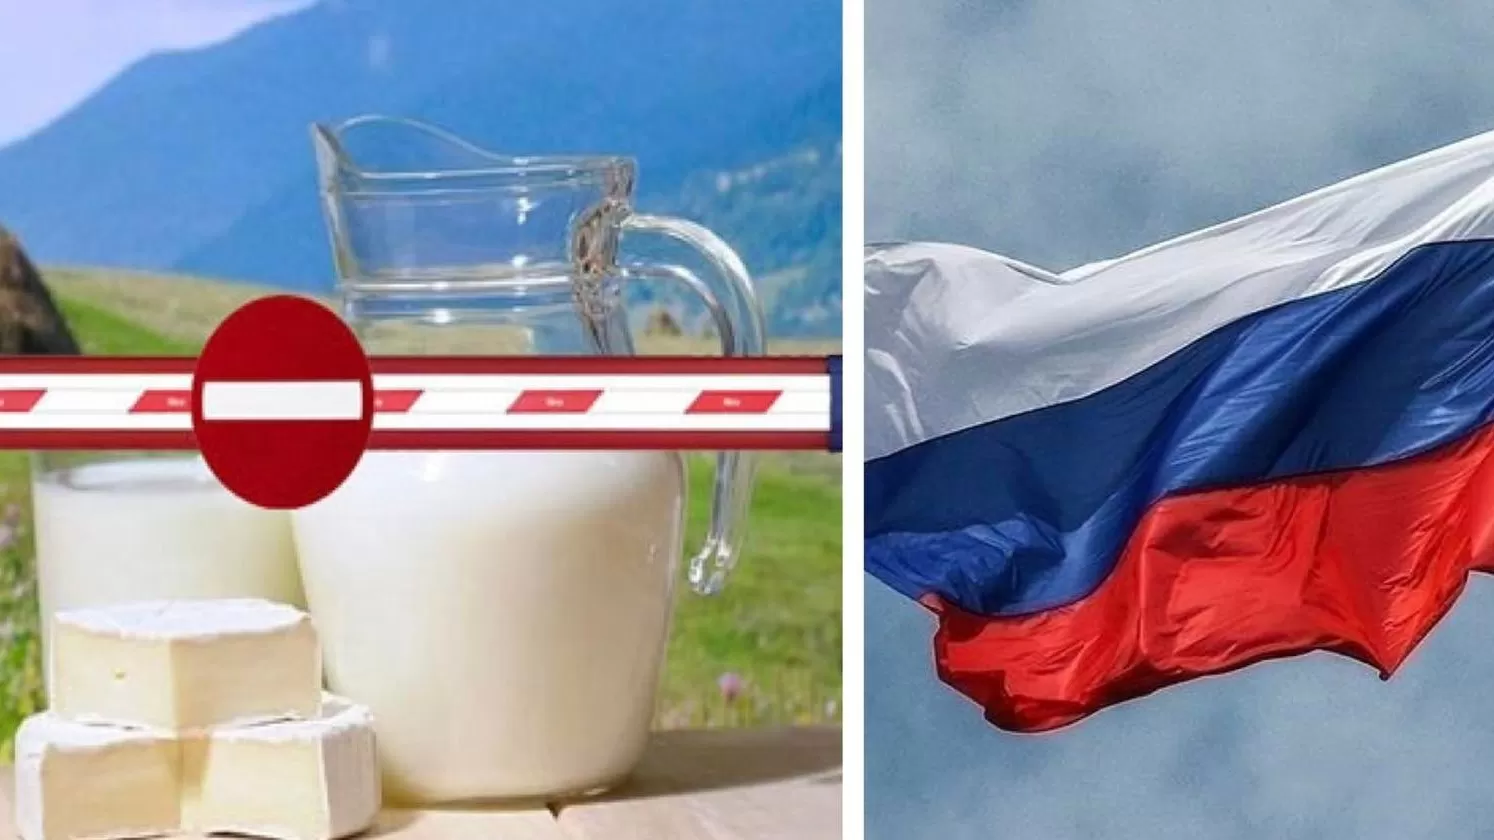  ՌԴ կաթնամթերքի արտահանման արգելքի հետեւանքով, հայ արտադրողները կարող են մի քանի միլիոն դոլար կորցնել